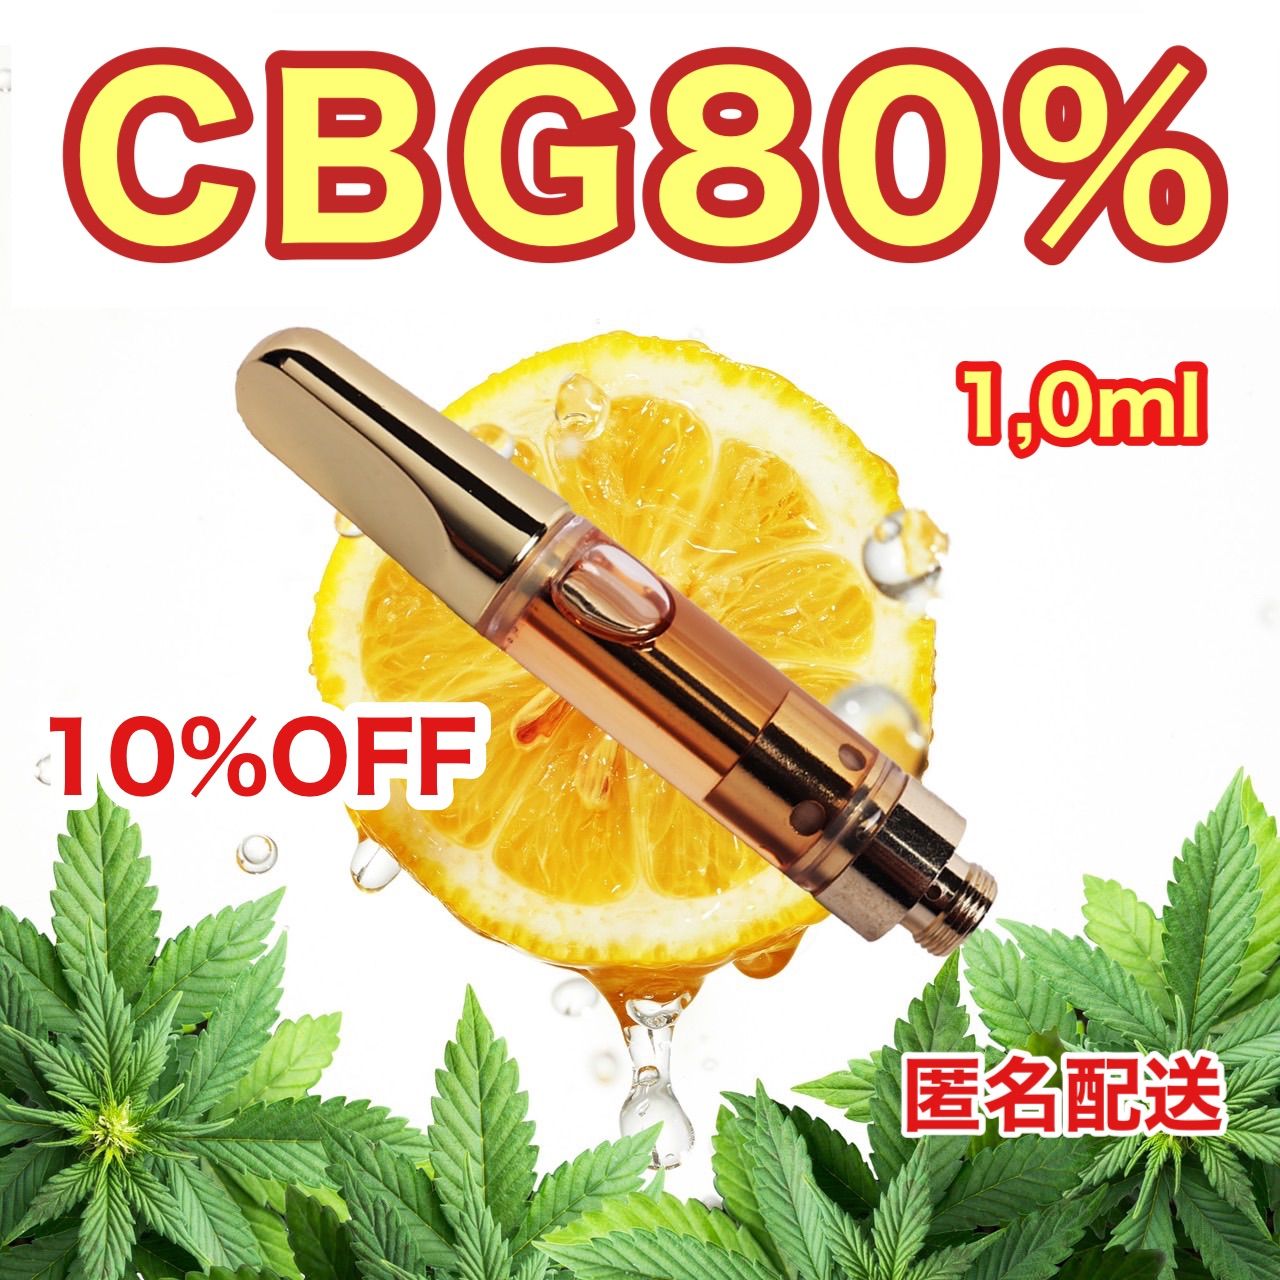 高濃度 CBG 80%リキッド1,0ml 510規格